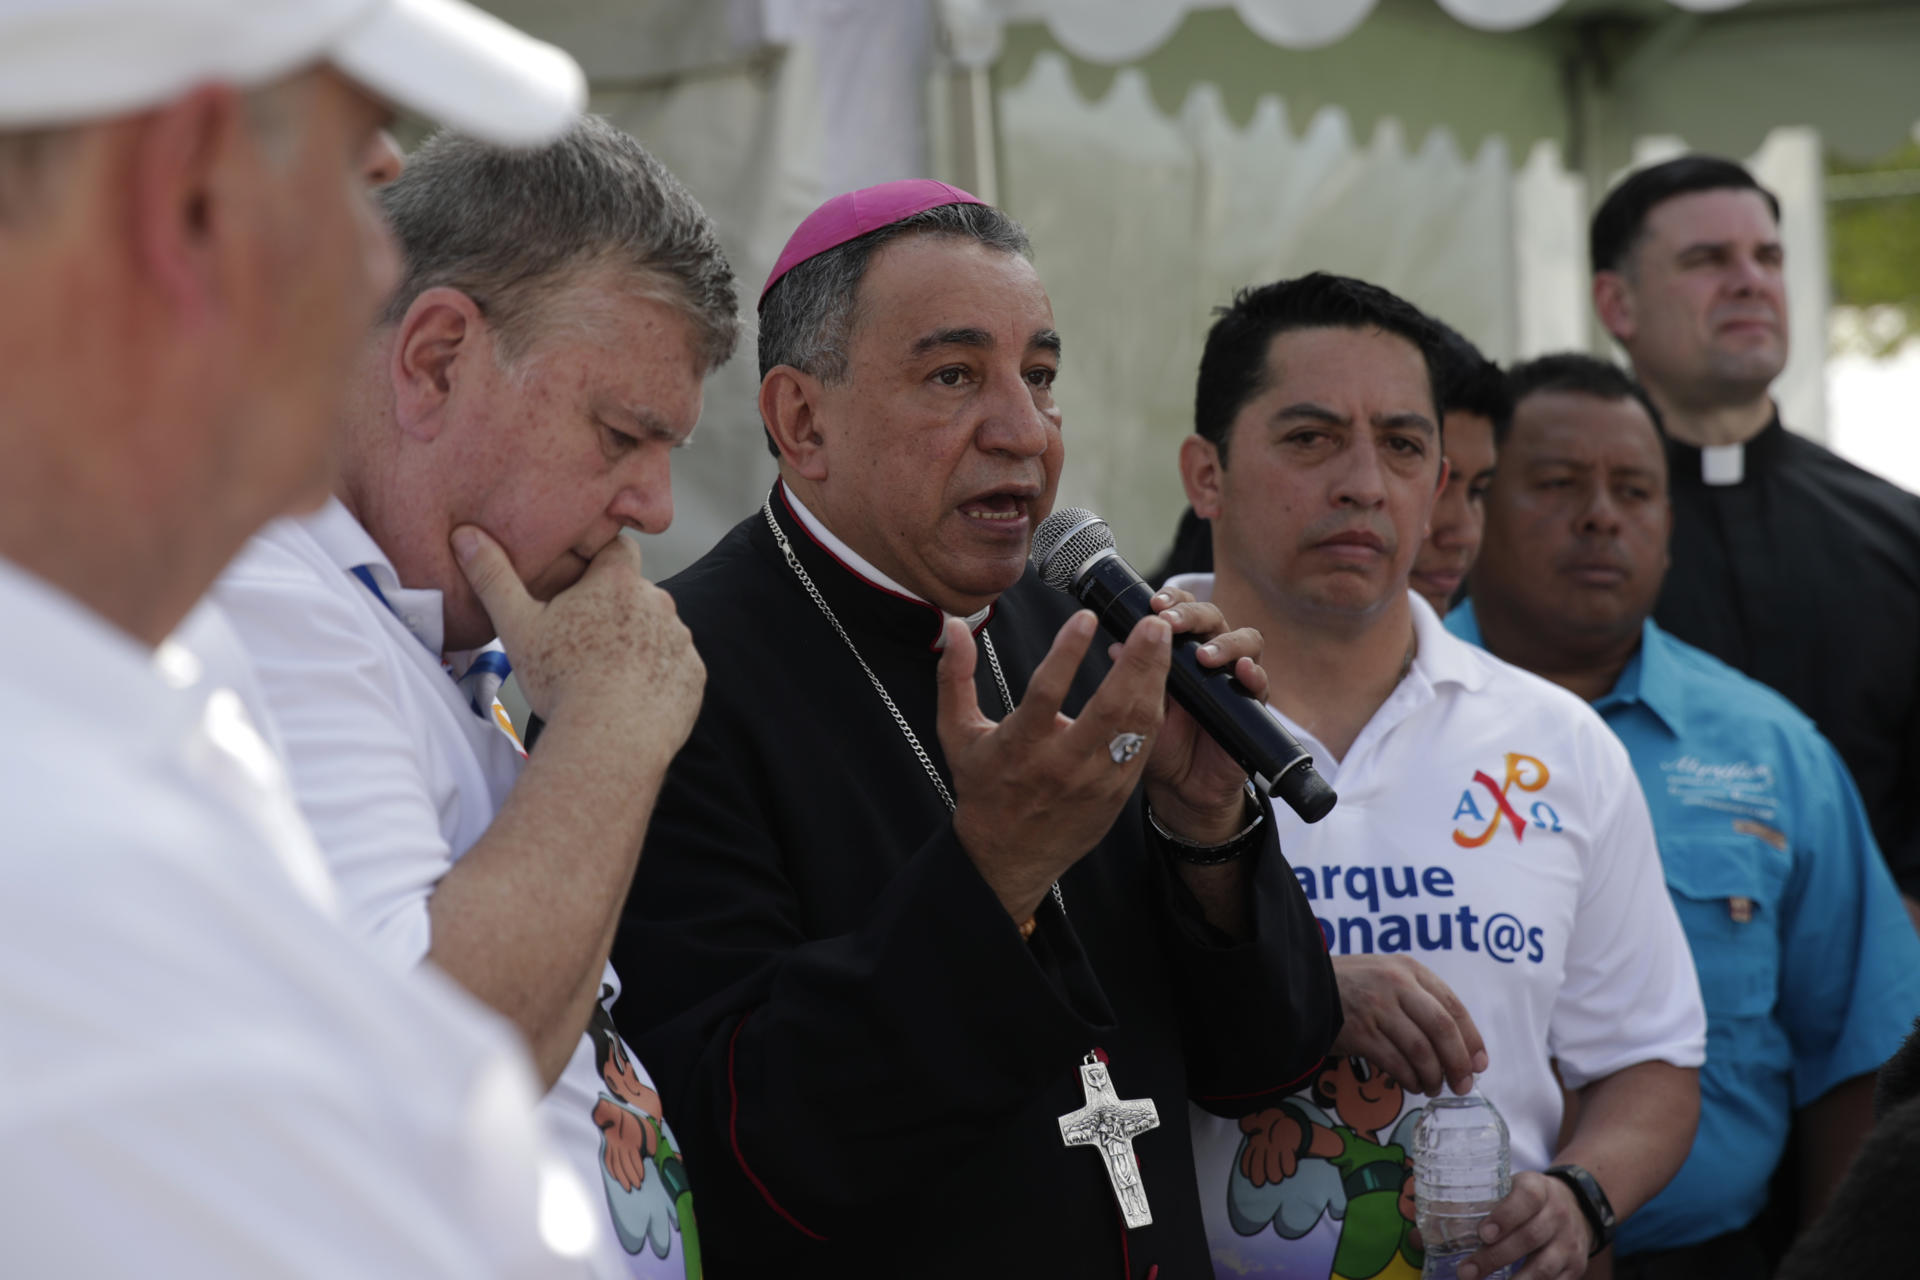 El arzobispo de Panamá abogó por tender la mano a los migrantes y atacar la trata de personas